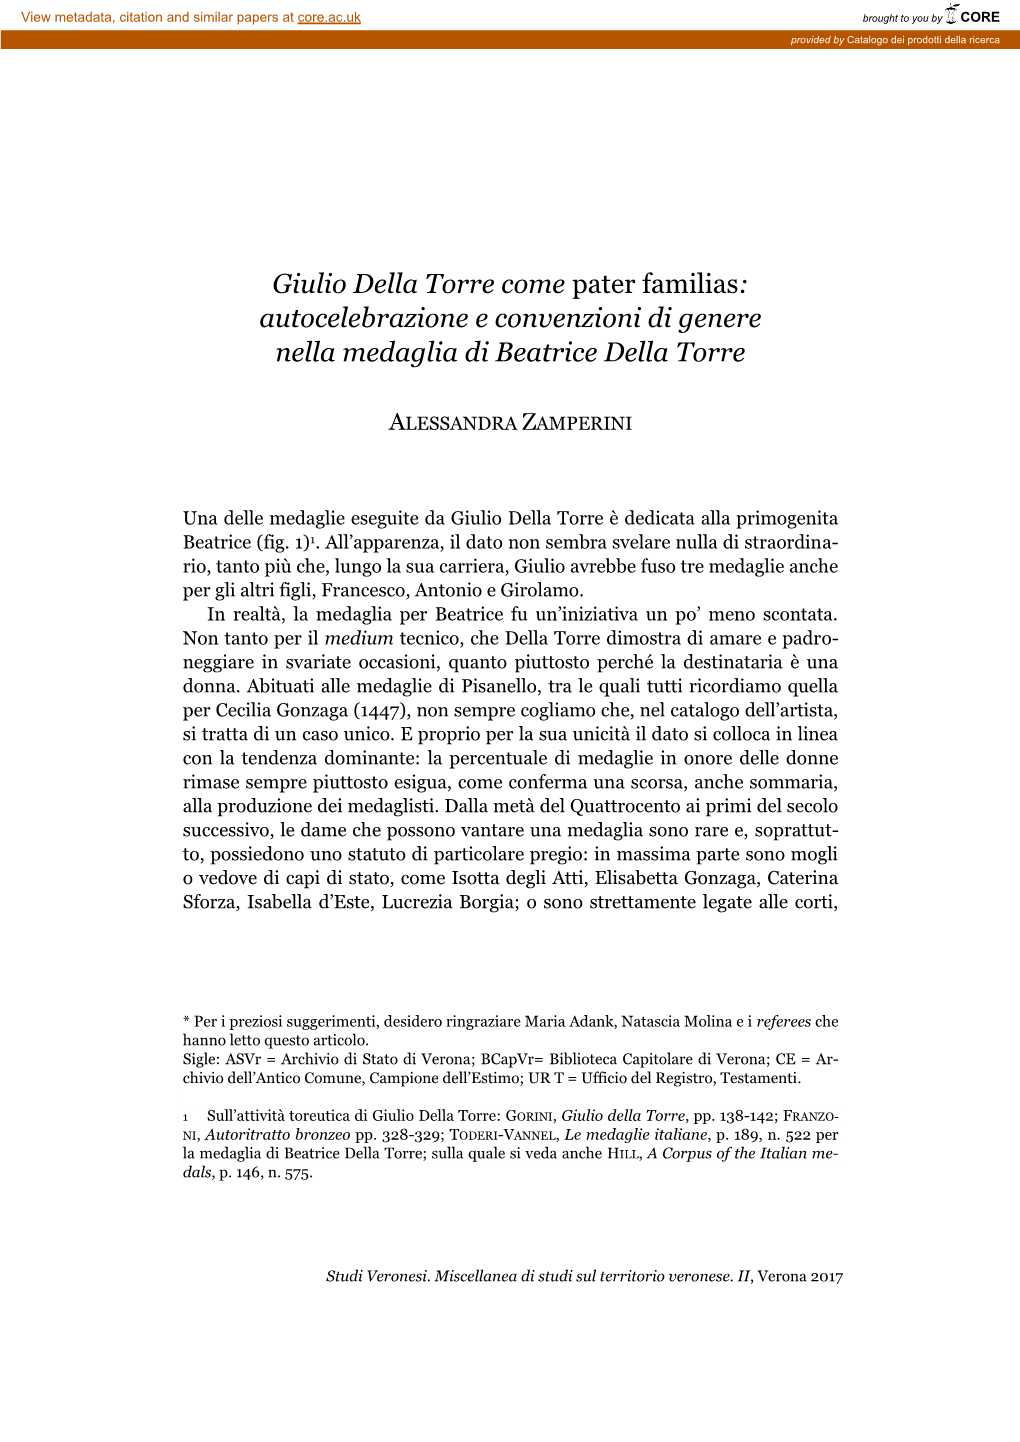 ZAMPERINI, Giulio Della Torre Studi Veronesi